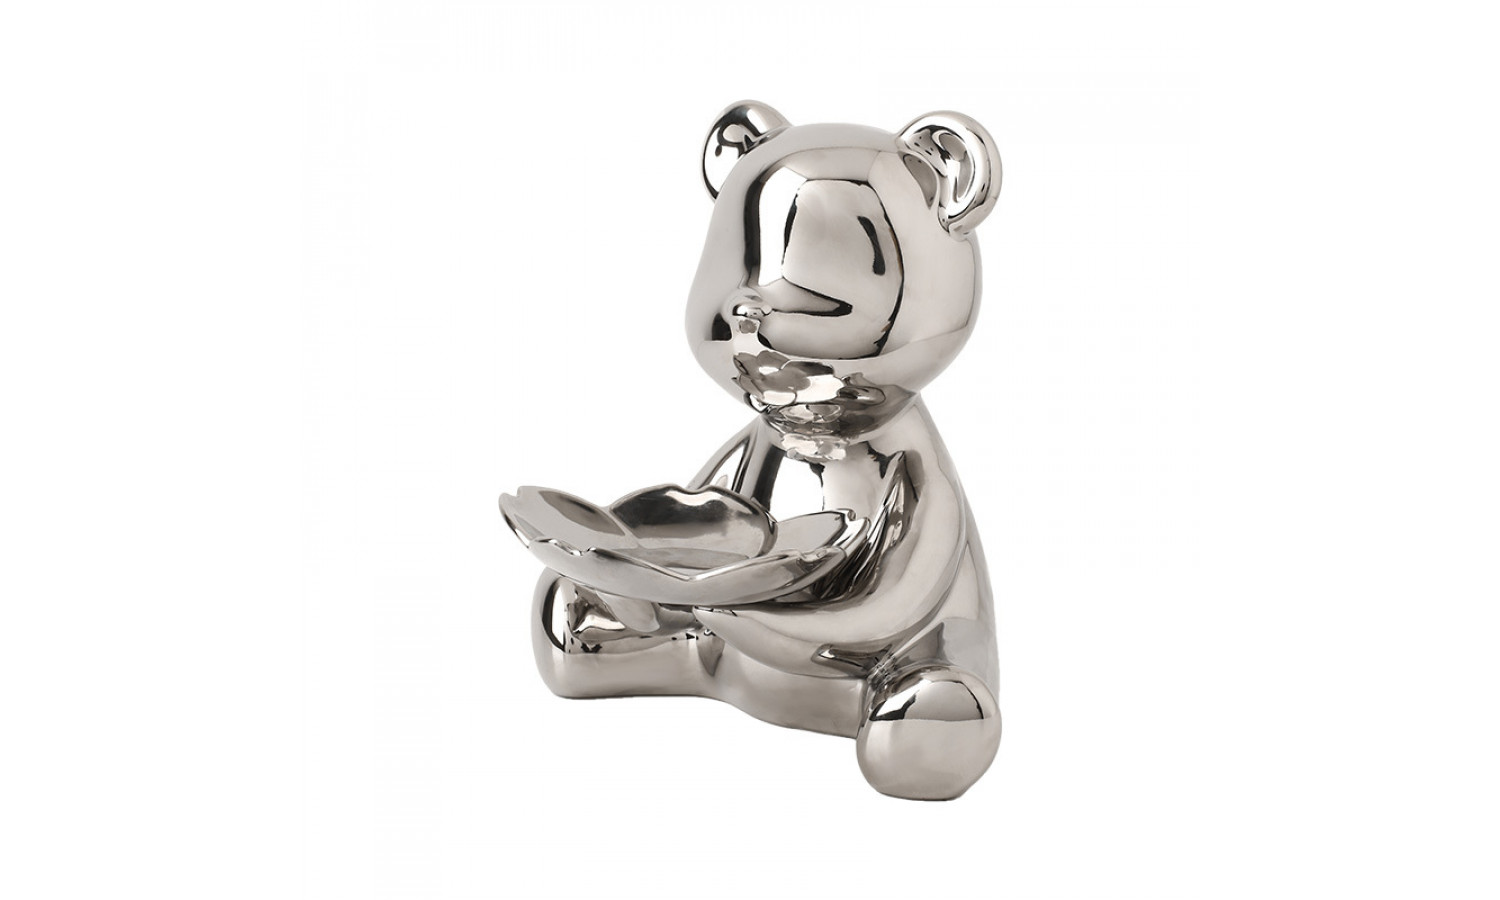 Статуэтка Медведь с подносом IST-067, 21х24 см, серебро